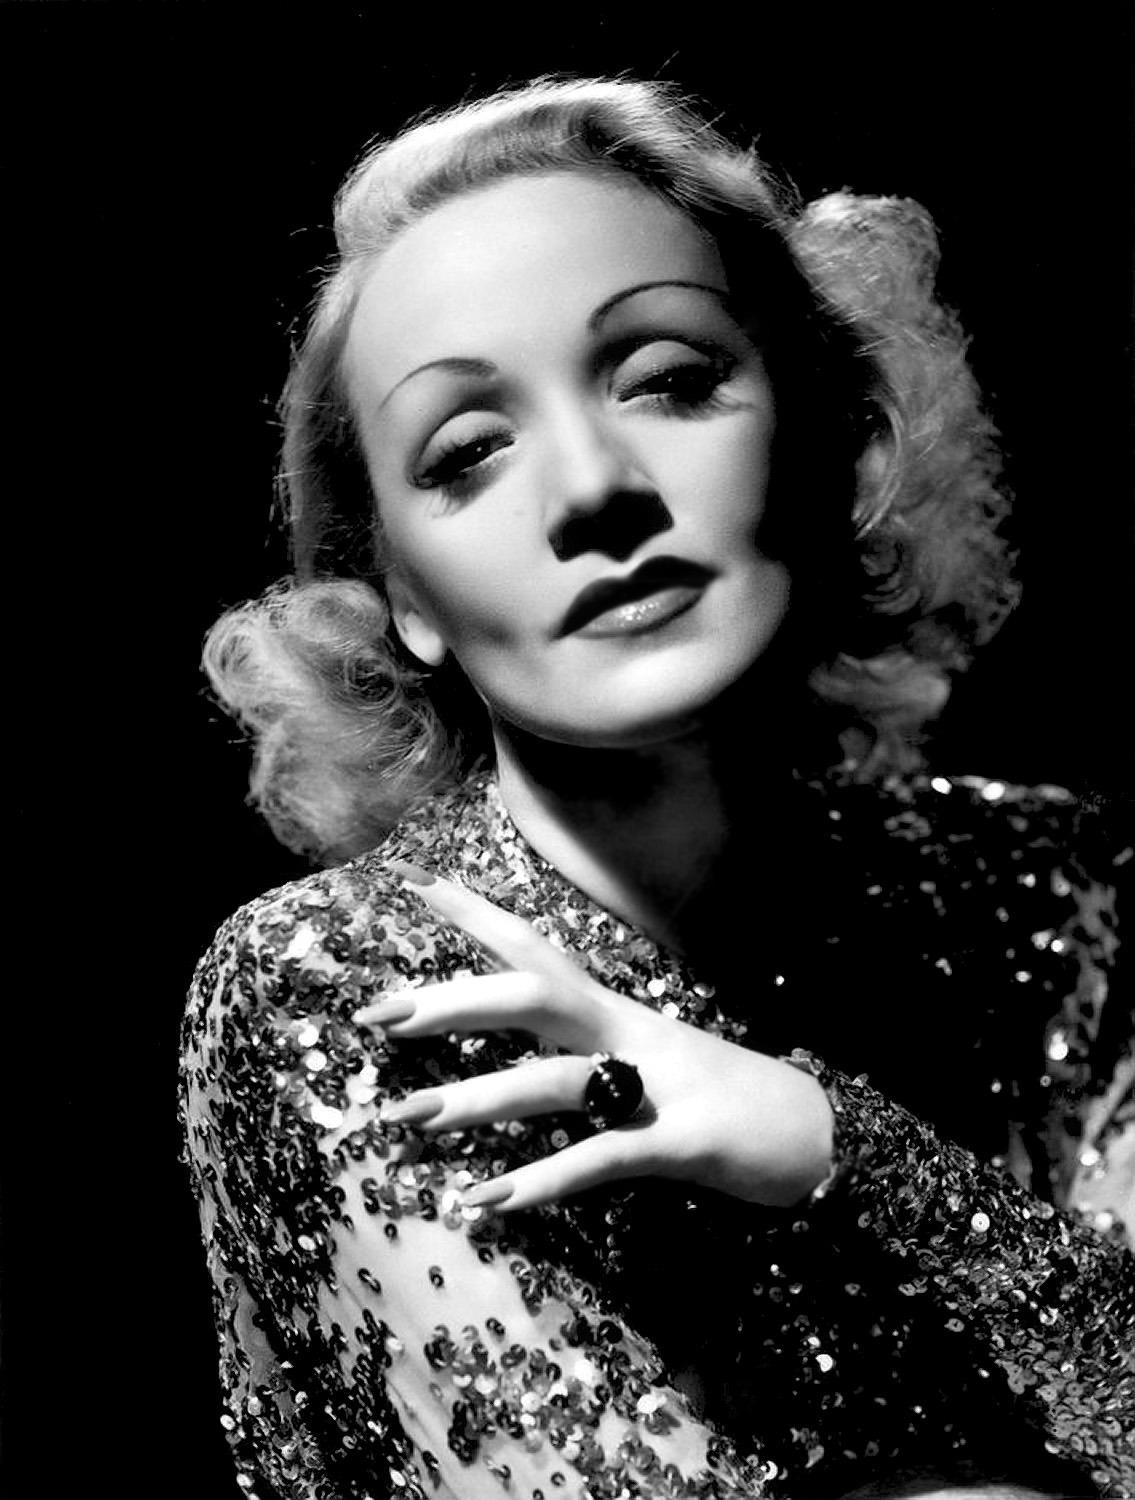 Annex - Dietrich, Marlene (A Foreign Affair)_02.jpg